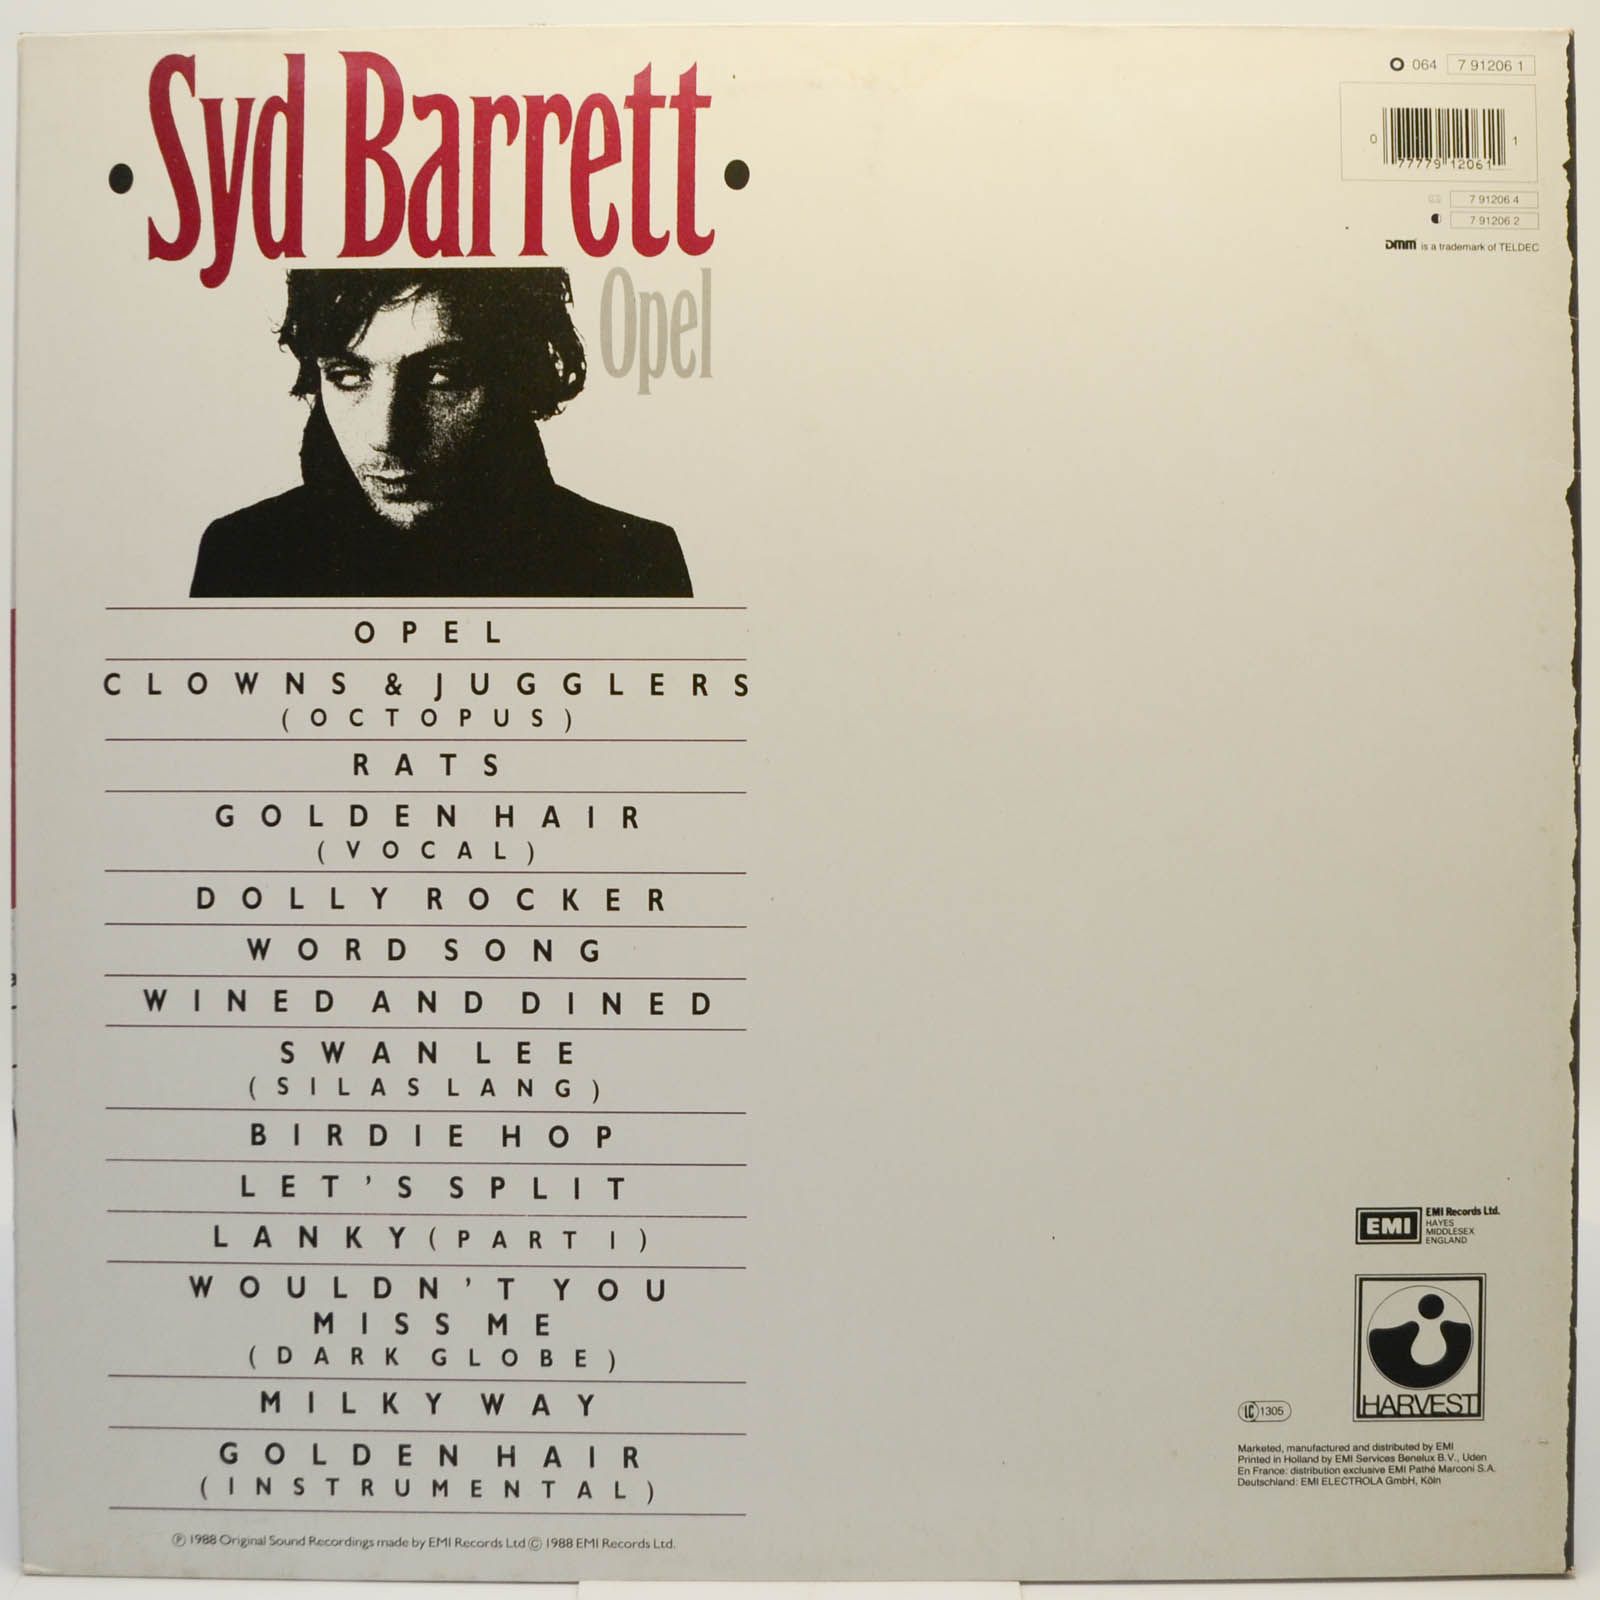 Syd Barrett — Opel, 1988